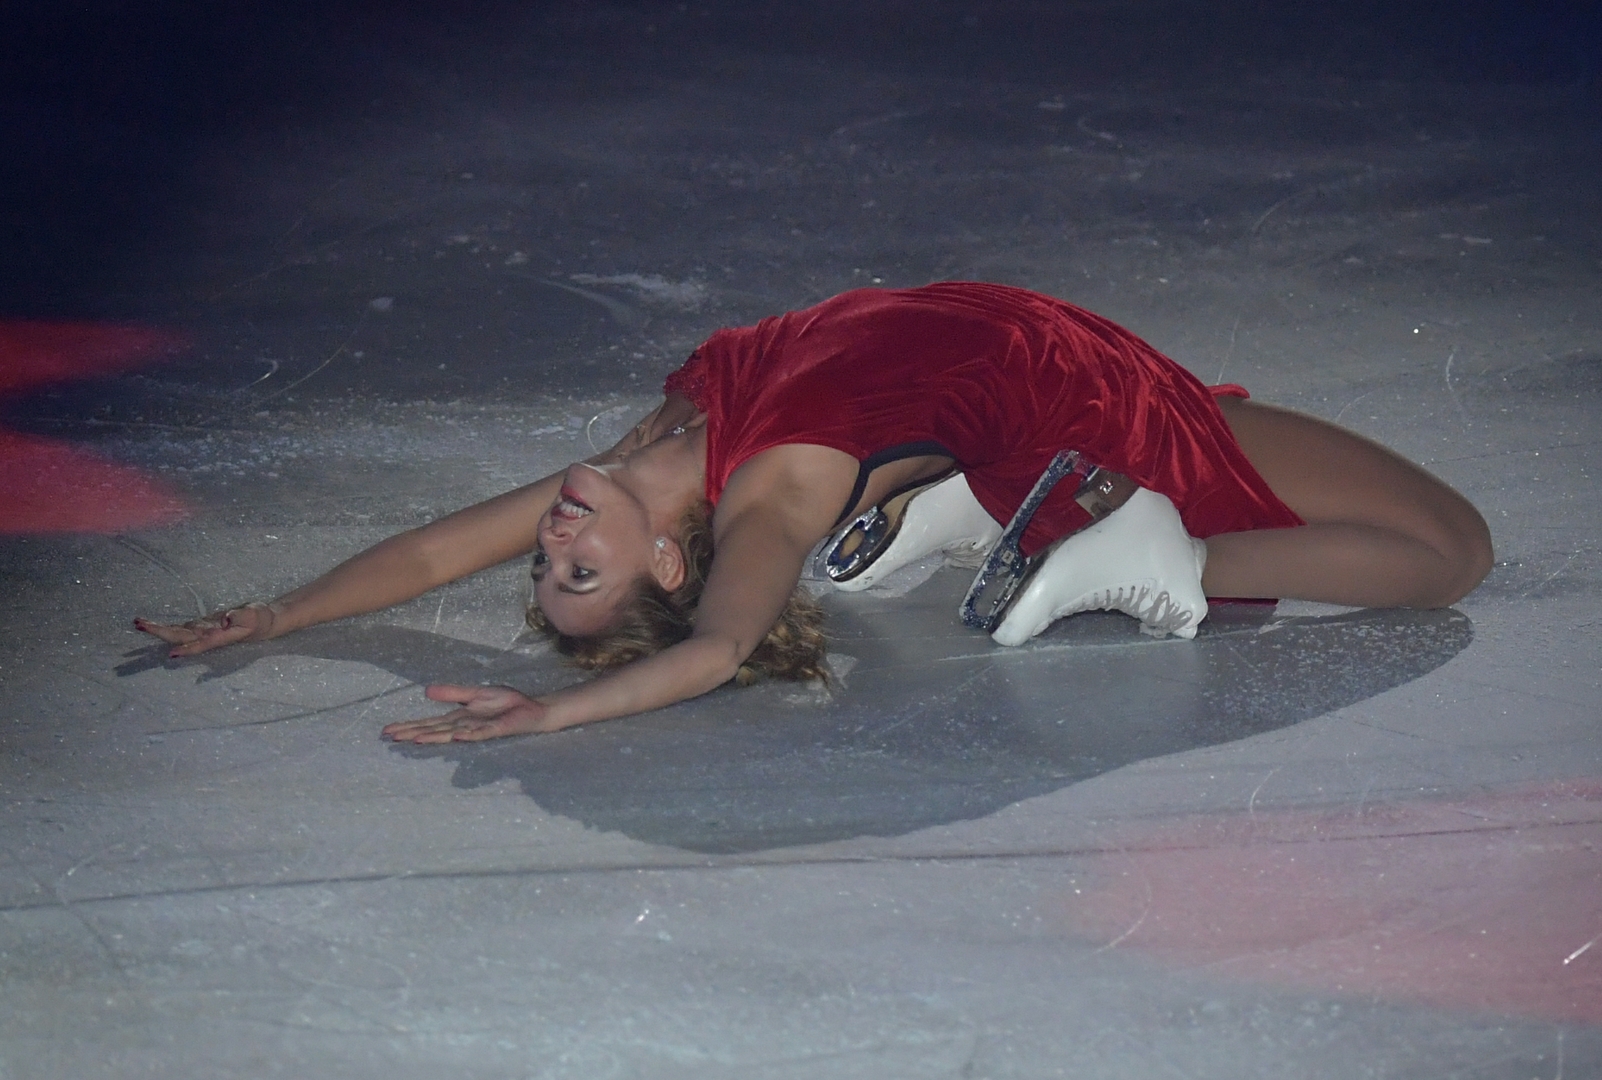 Олимпийская чемпионка в танцах на льду Татьяна Навка